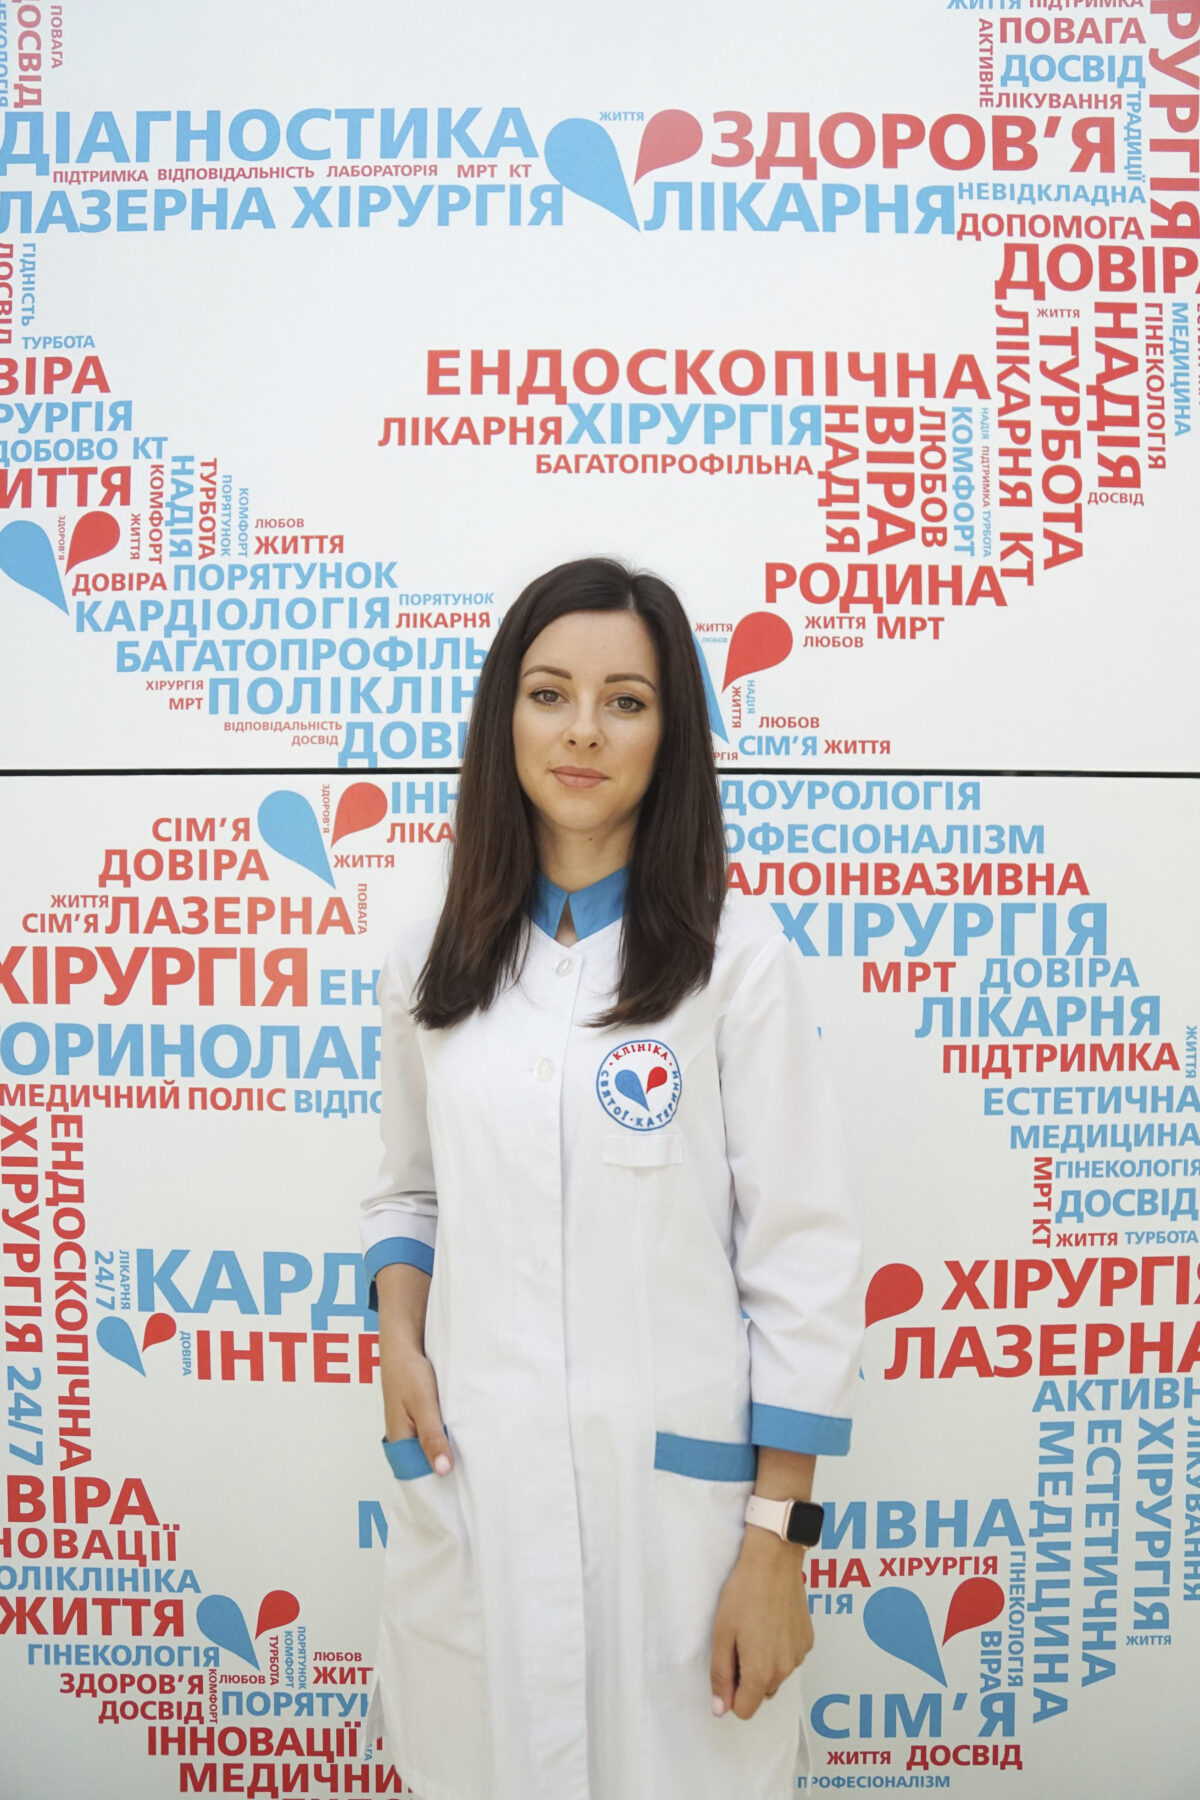 Залєвська Ірина Олександрівна - svekaterina.ua